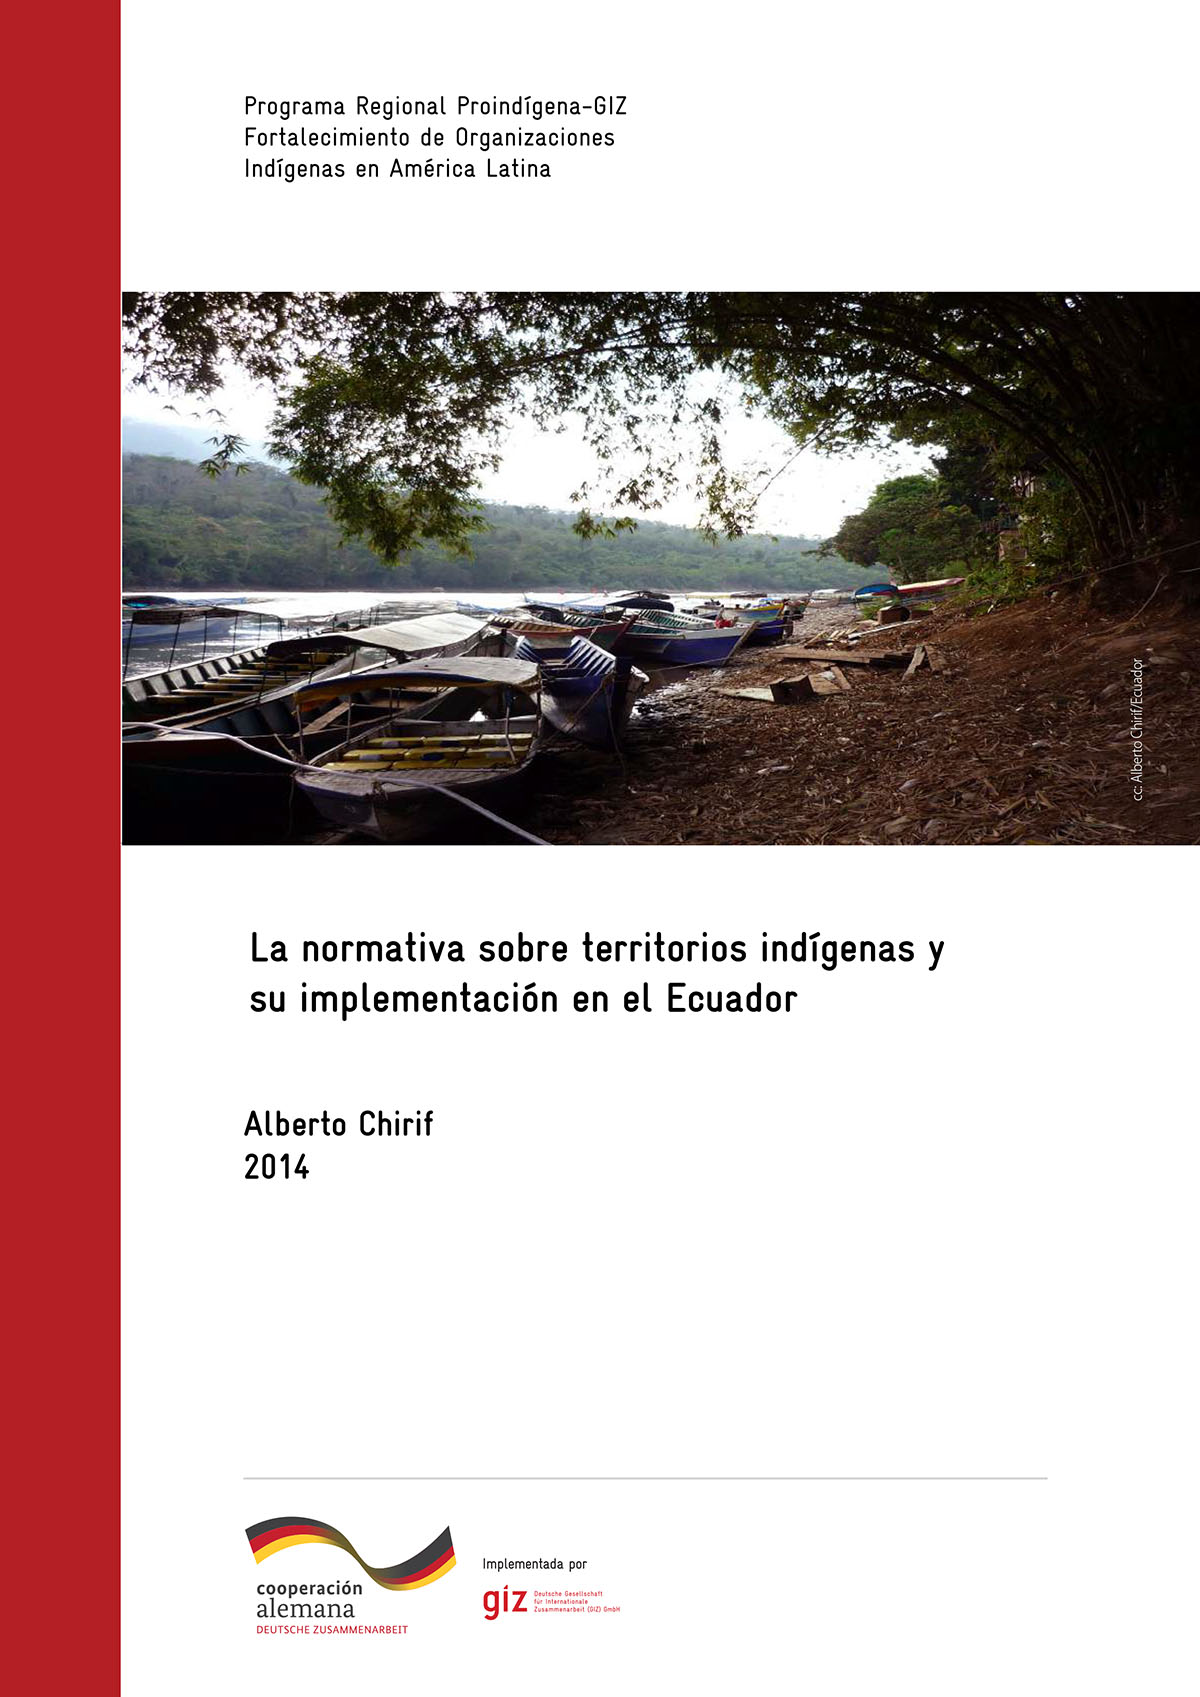 Chirif, Alberto <br>La normativa sobre territorios indígenas y su implementación en Ecuador<br/>Quito: GIZ : ProIndígena. 2014. 47 páginas 